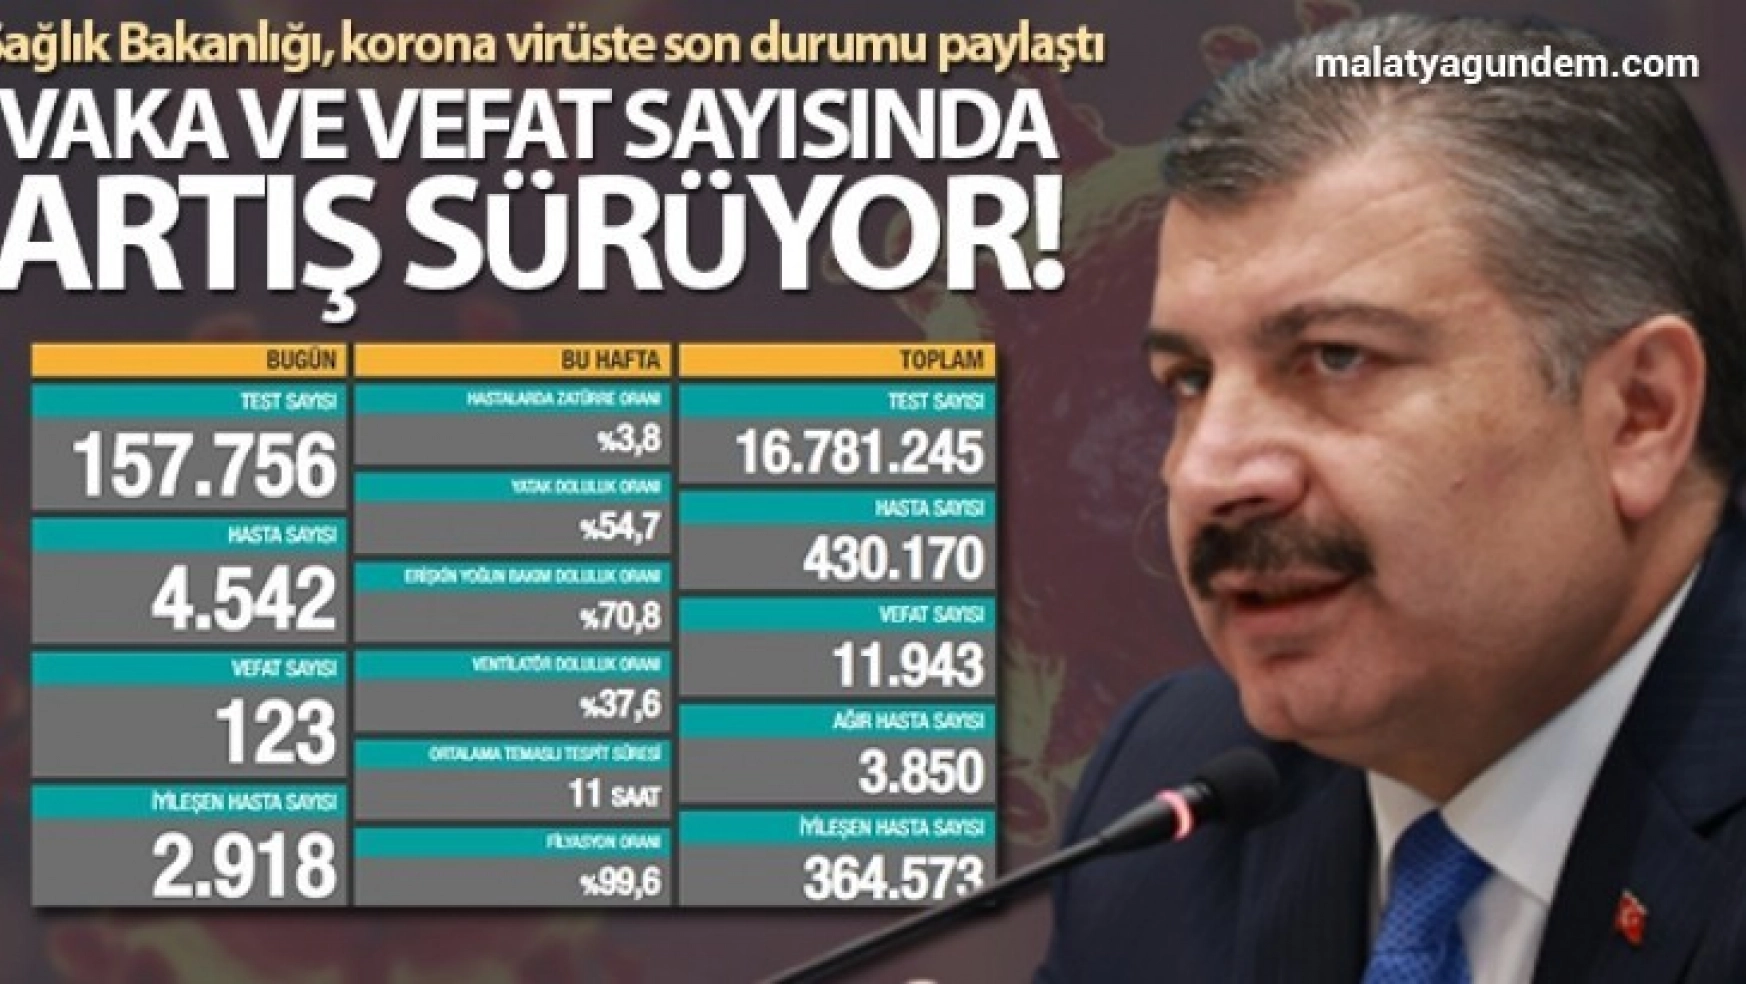 Türkiye'de son 24 saatte 4542 kişiye Kovid-19 hastalık tanısı